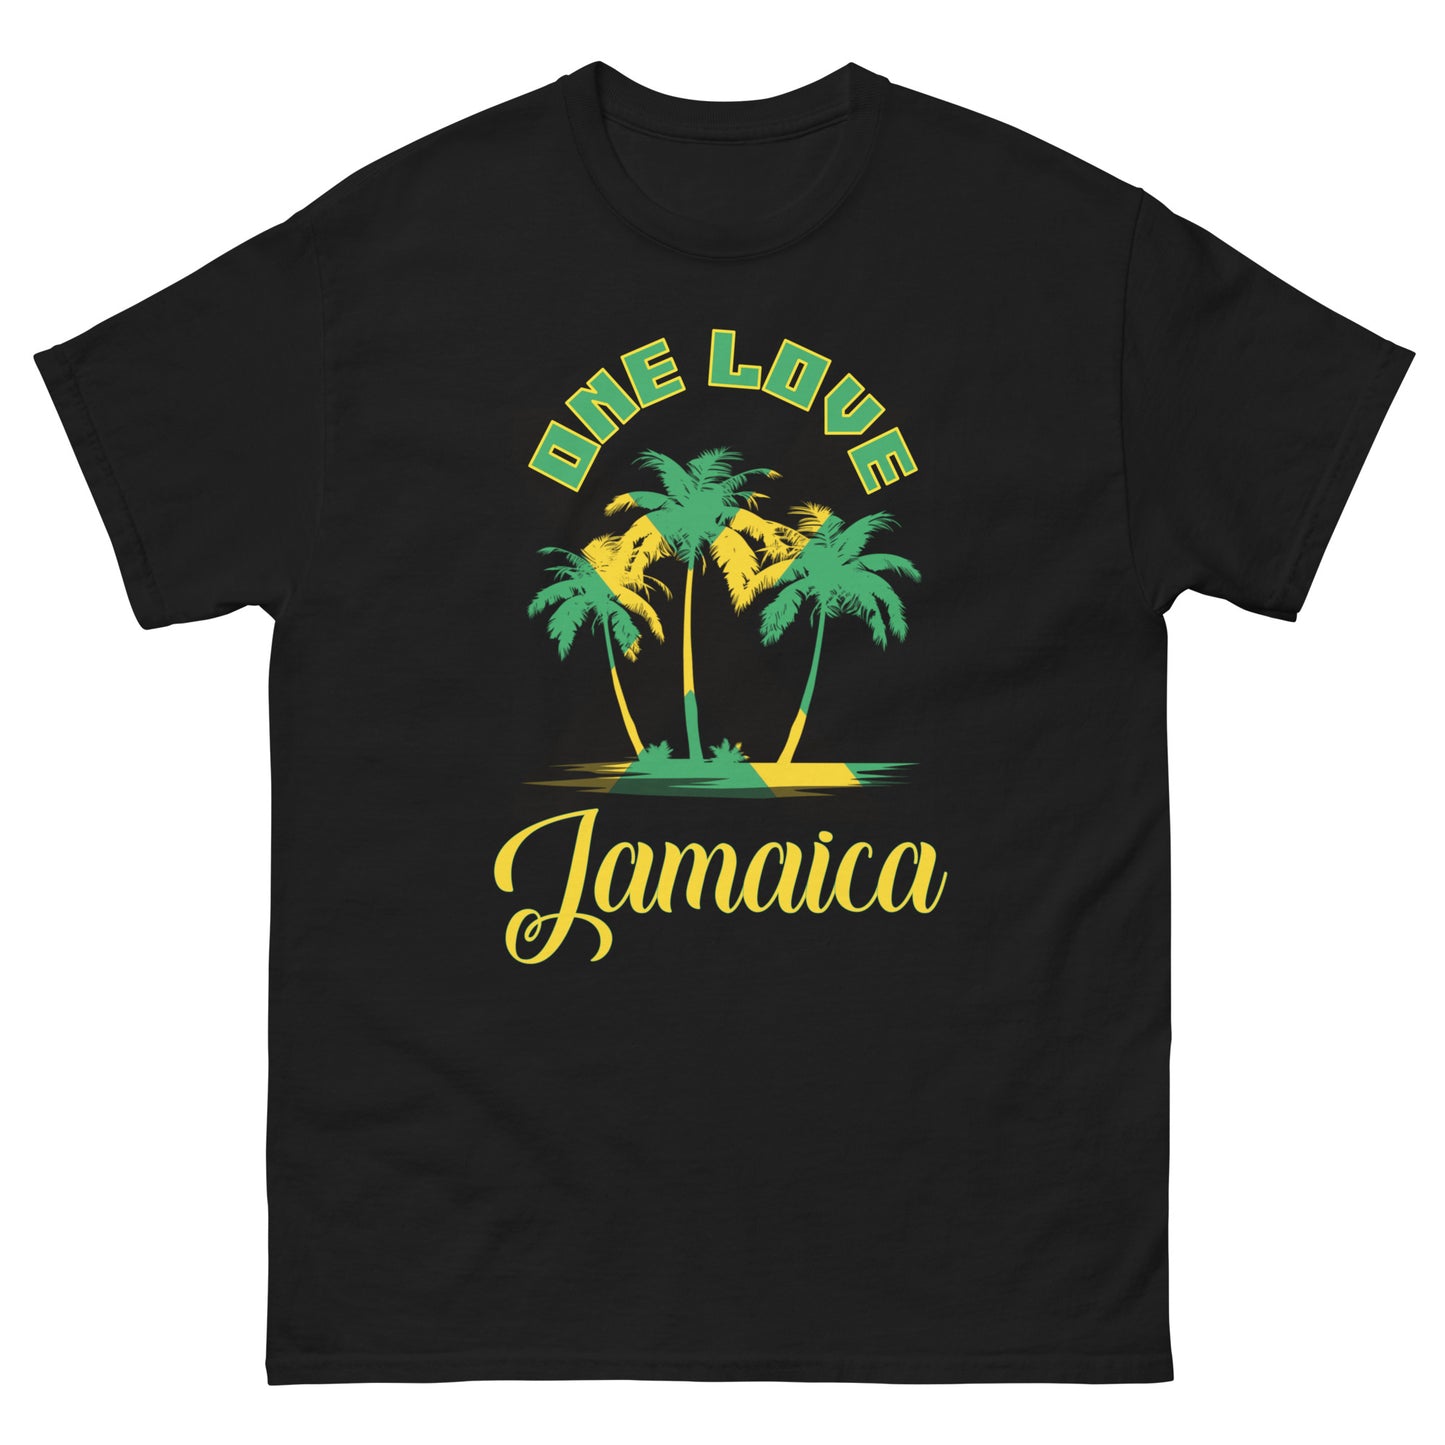 One Love - "Jamaica" Tee